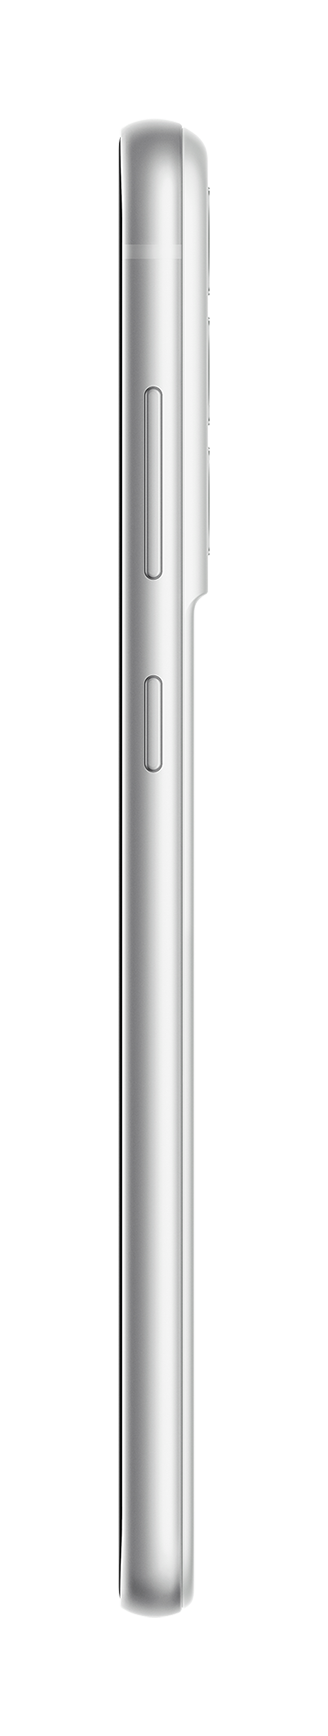 Samsung S21 FE white side